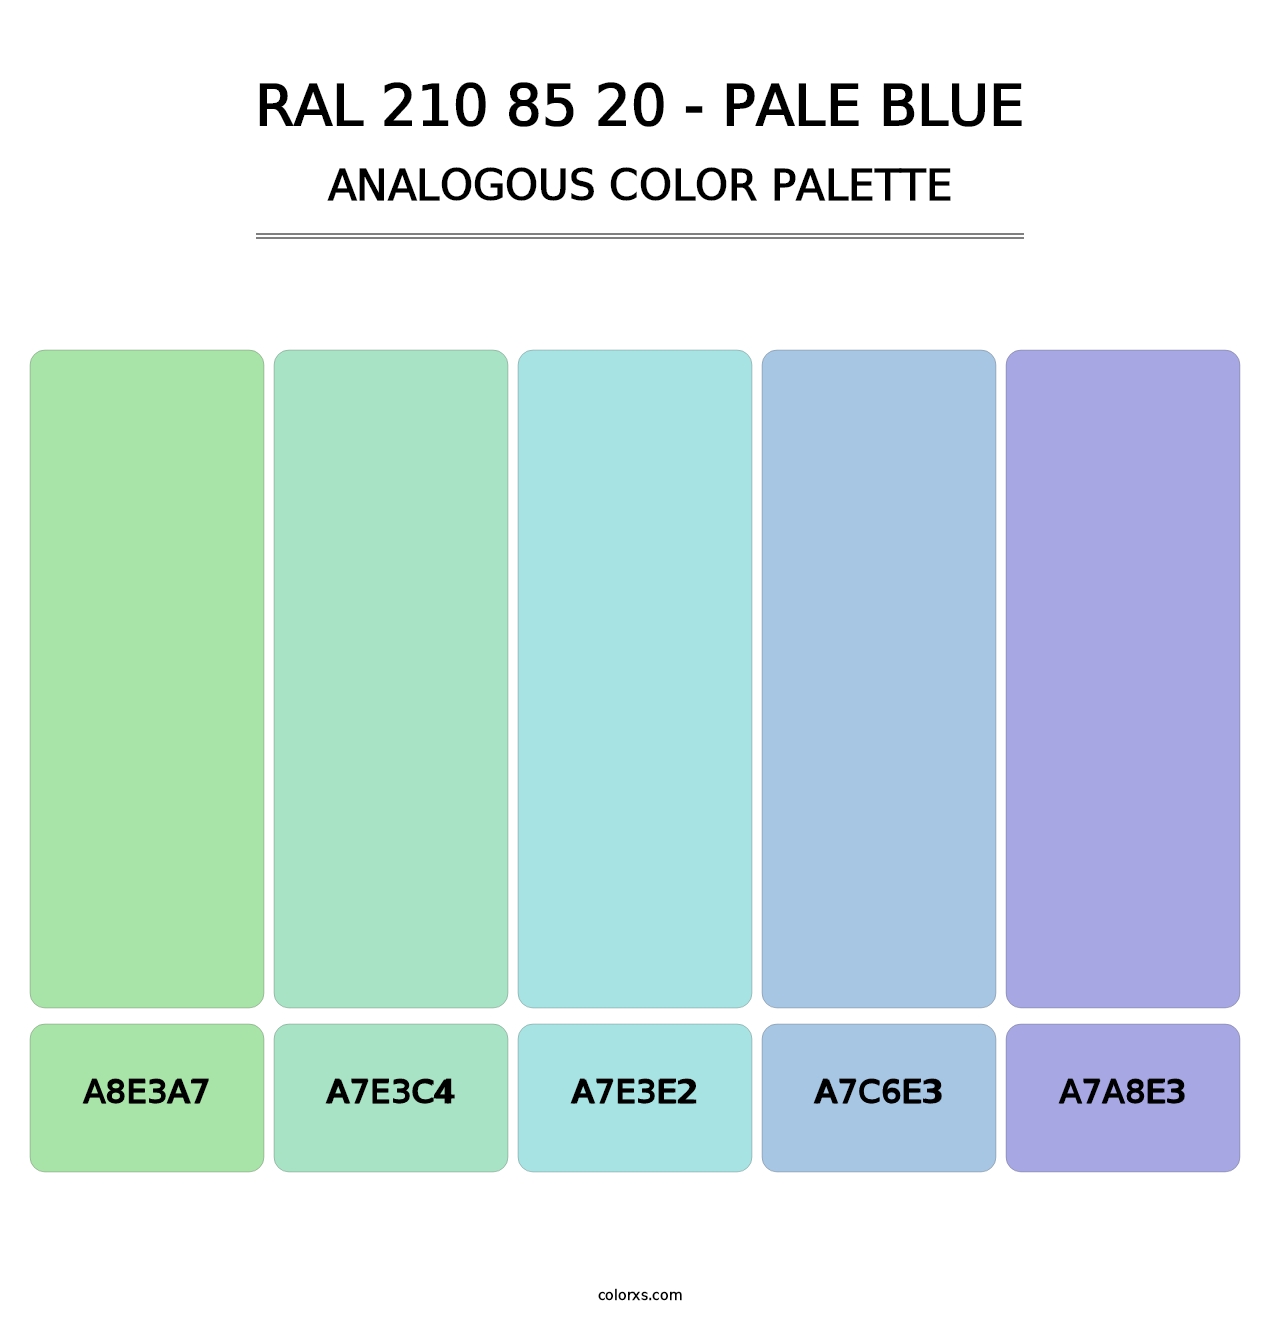 RAL 210 85 20 - Pale Blue - Analogous Color Palette